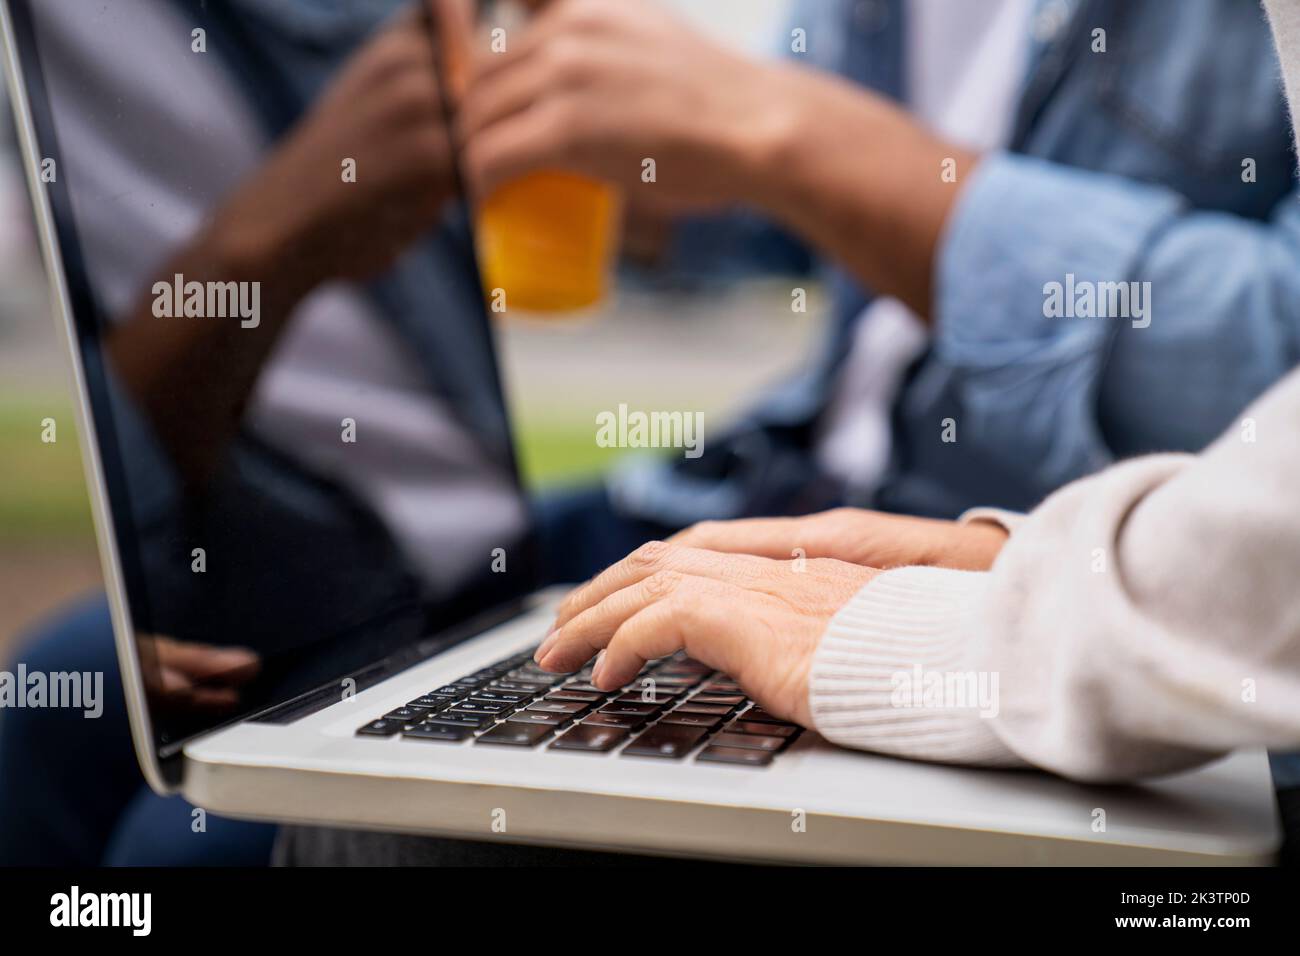 Gros plan sur la saisie des mains d'une femme sur le clavier d'un ordinateur portable Banque D'Images